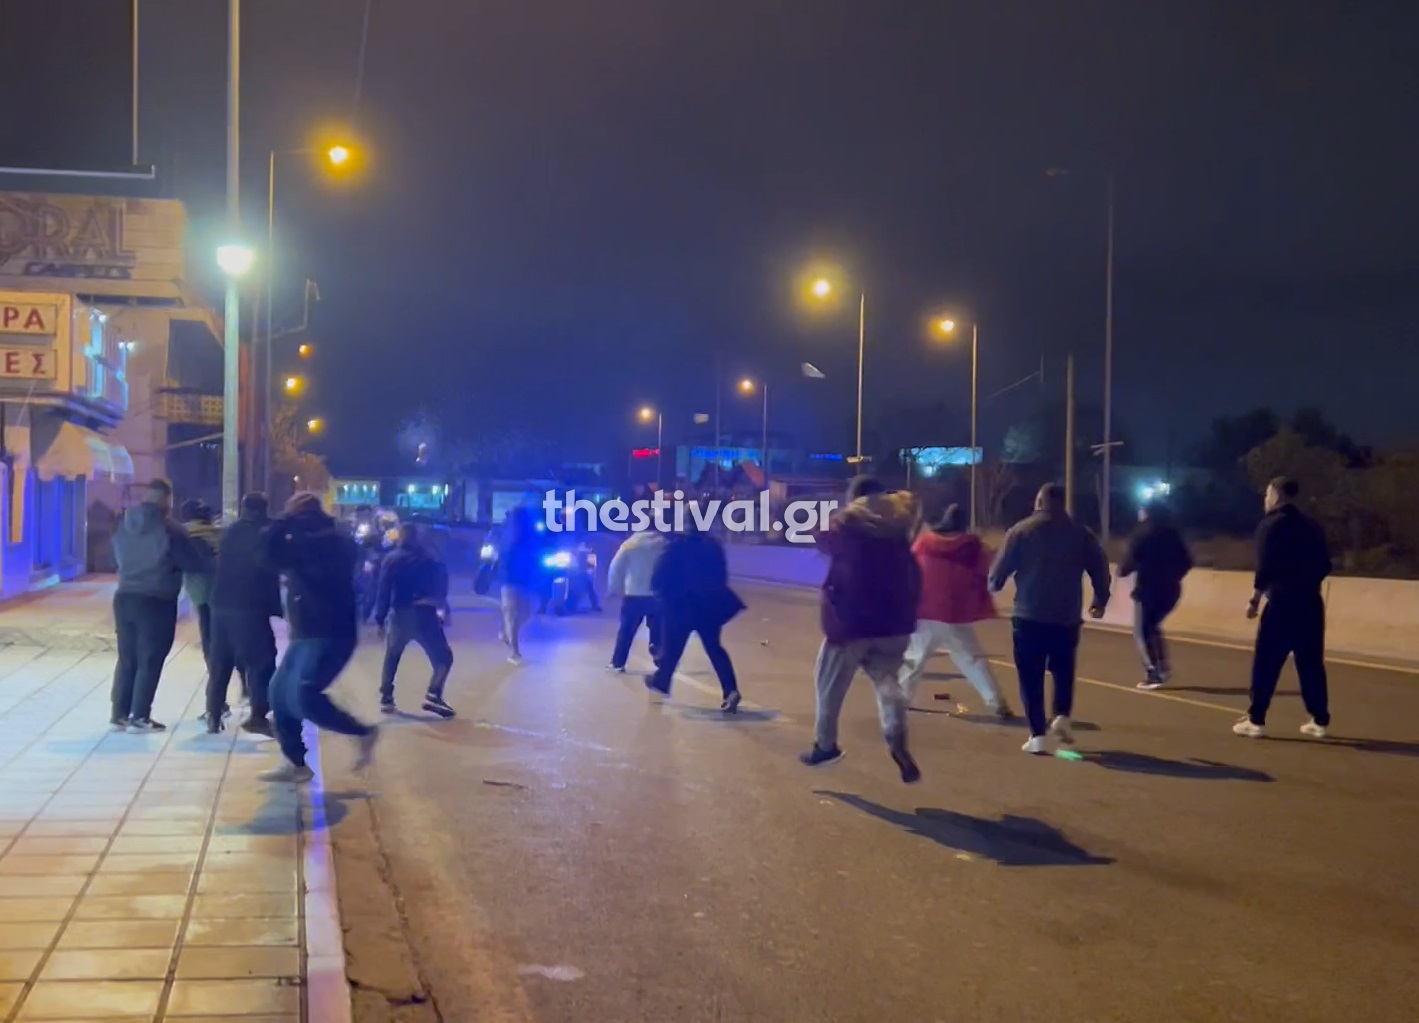 Θεσσαλονίκη: Επεισόδια στη Σταυρούπολη ανάμεσα σε Ρομά και αστυνομικούς - Δείτε βίντεο